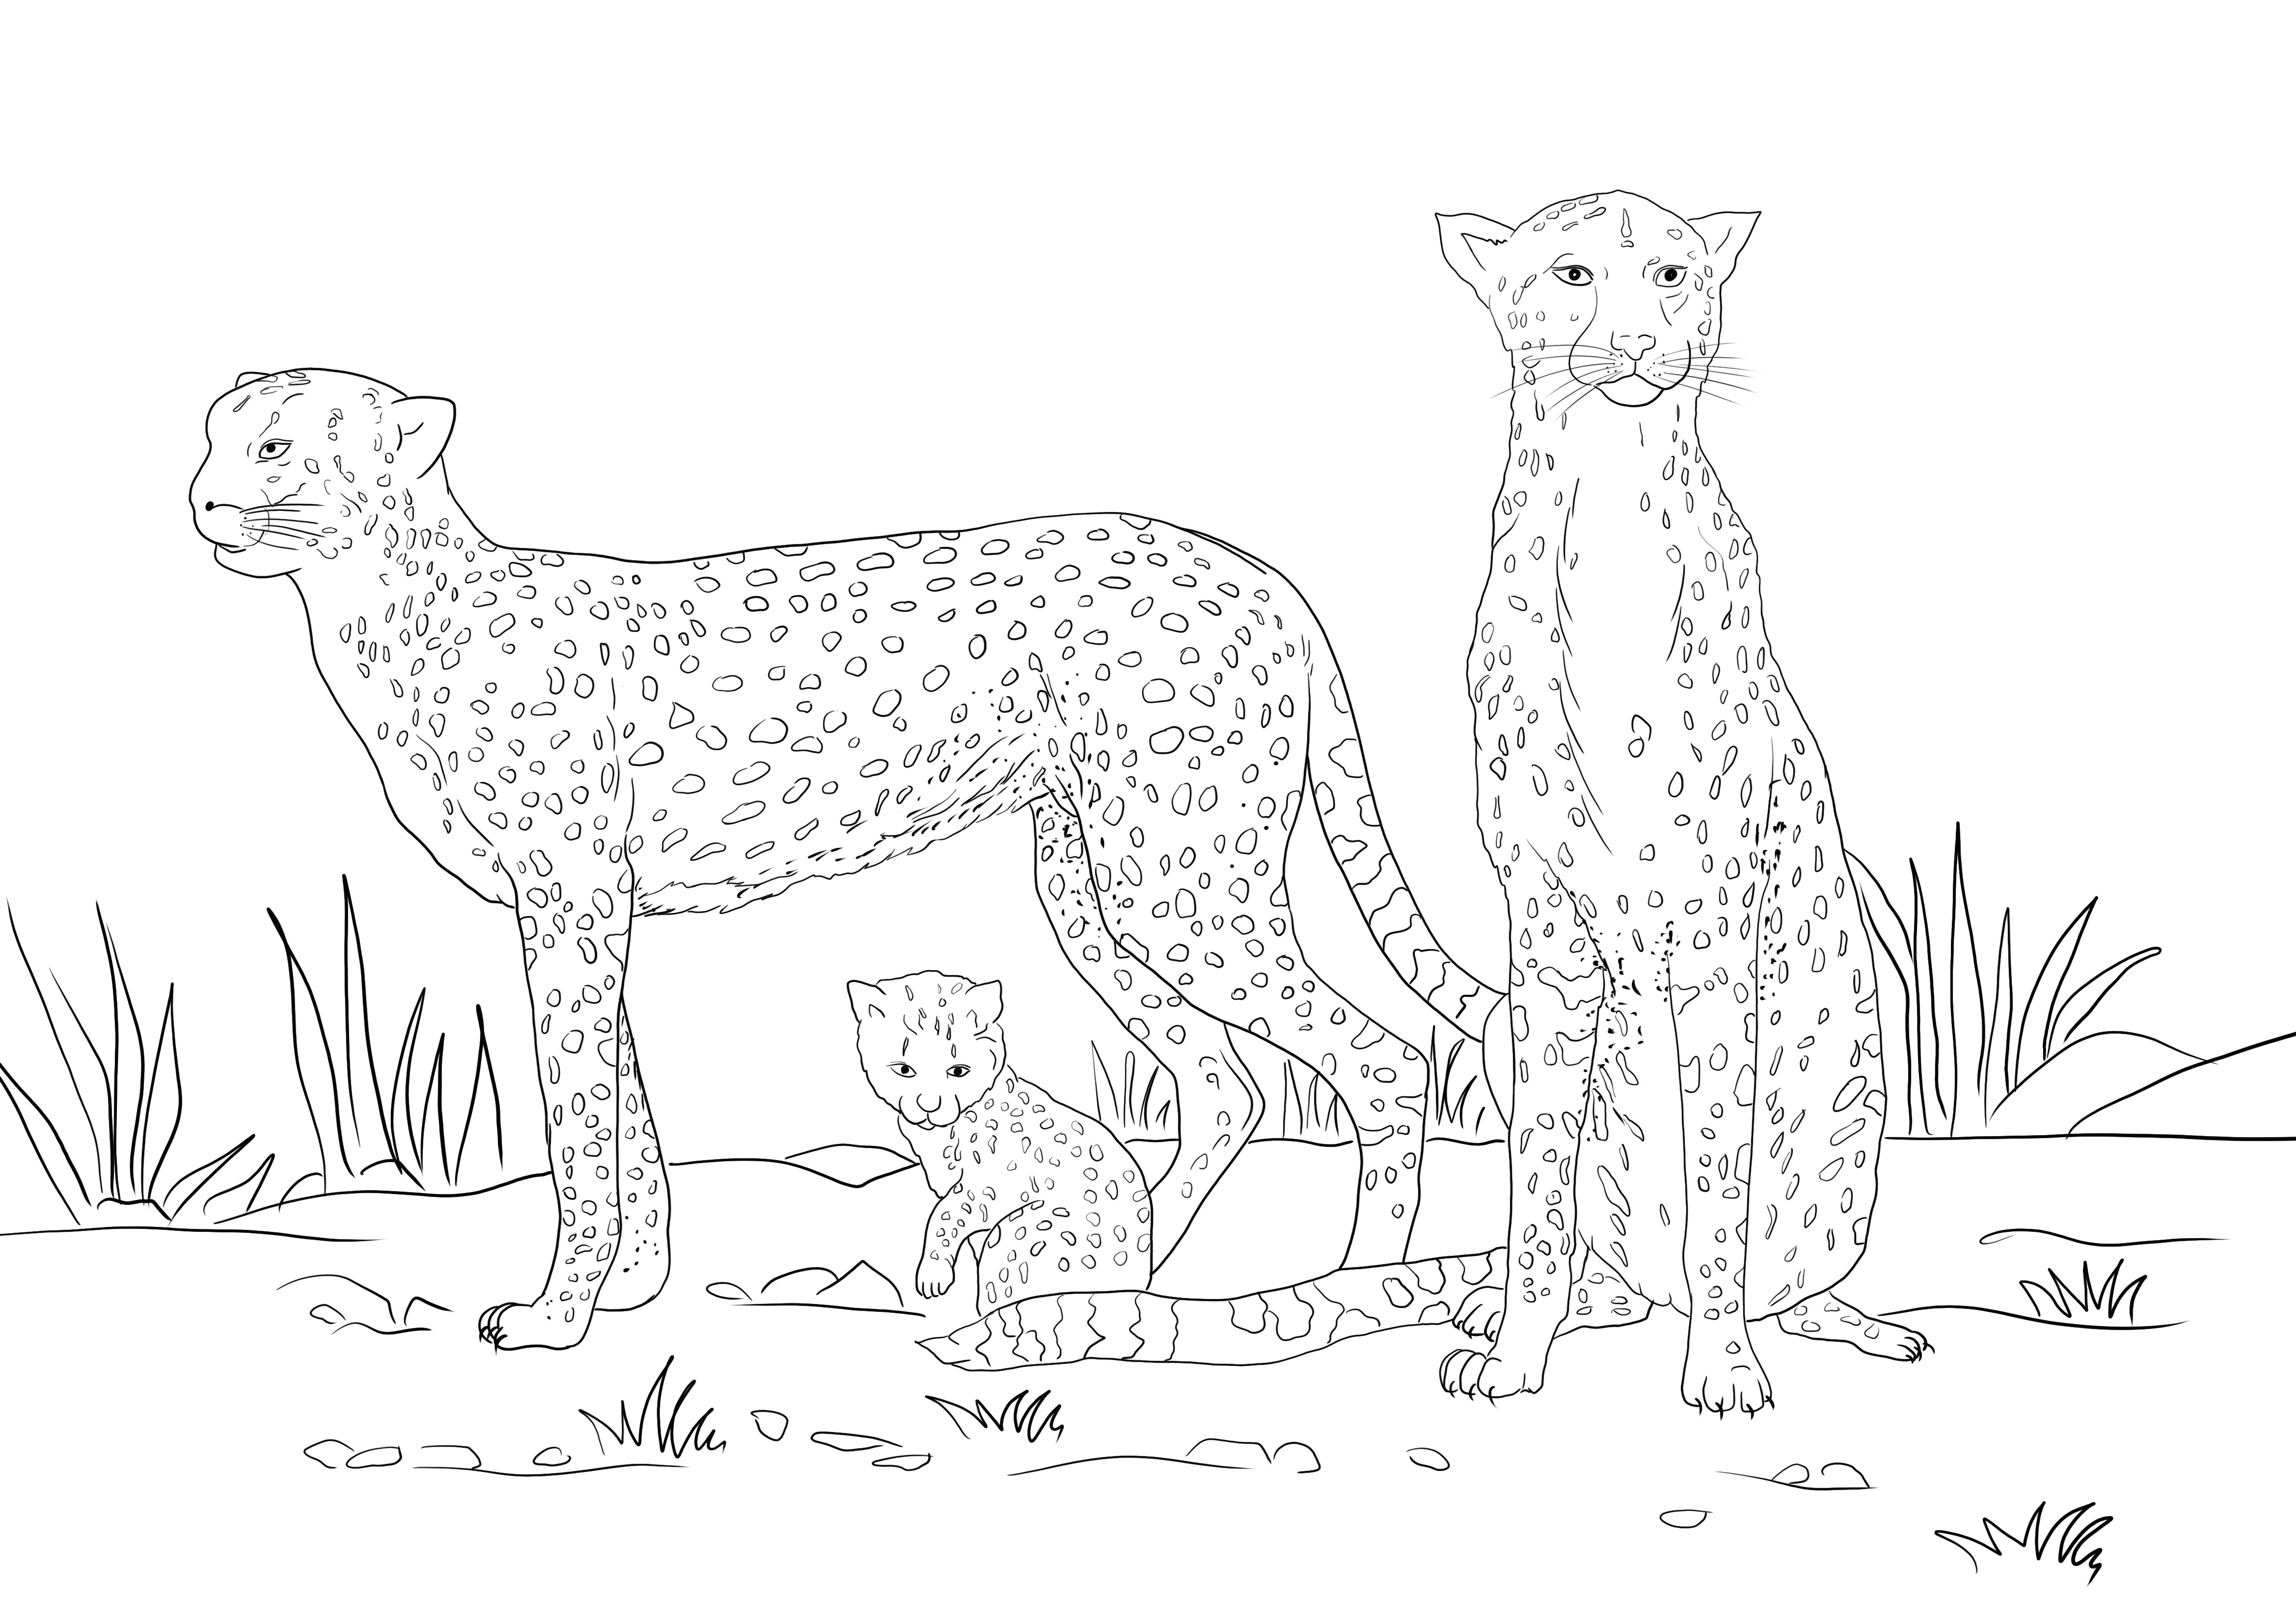 Oto bezpłatny zasób kolorowych obrazów rodziny Gepardów, które można bezpłatnie wydrukować